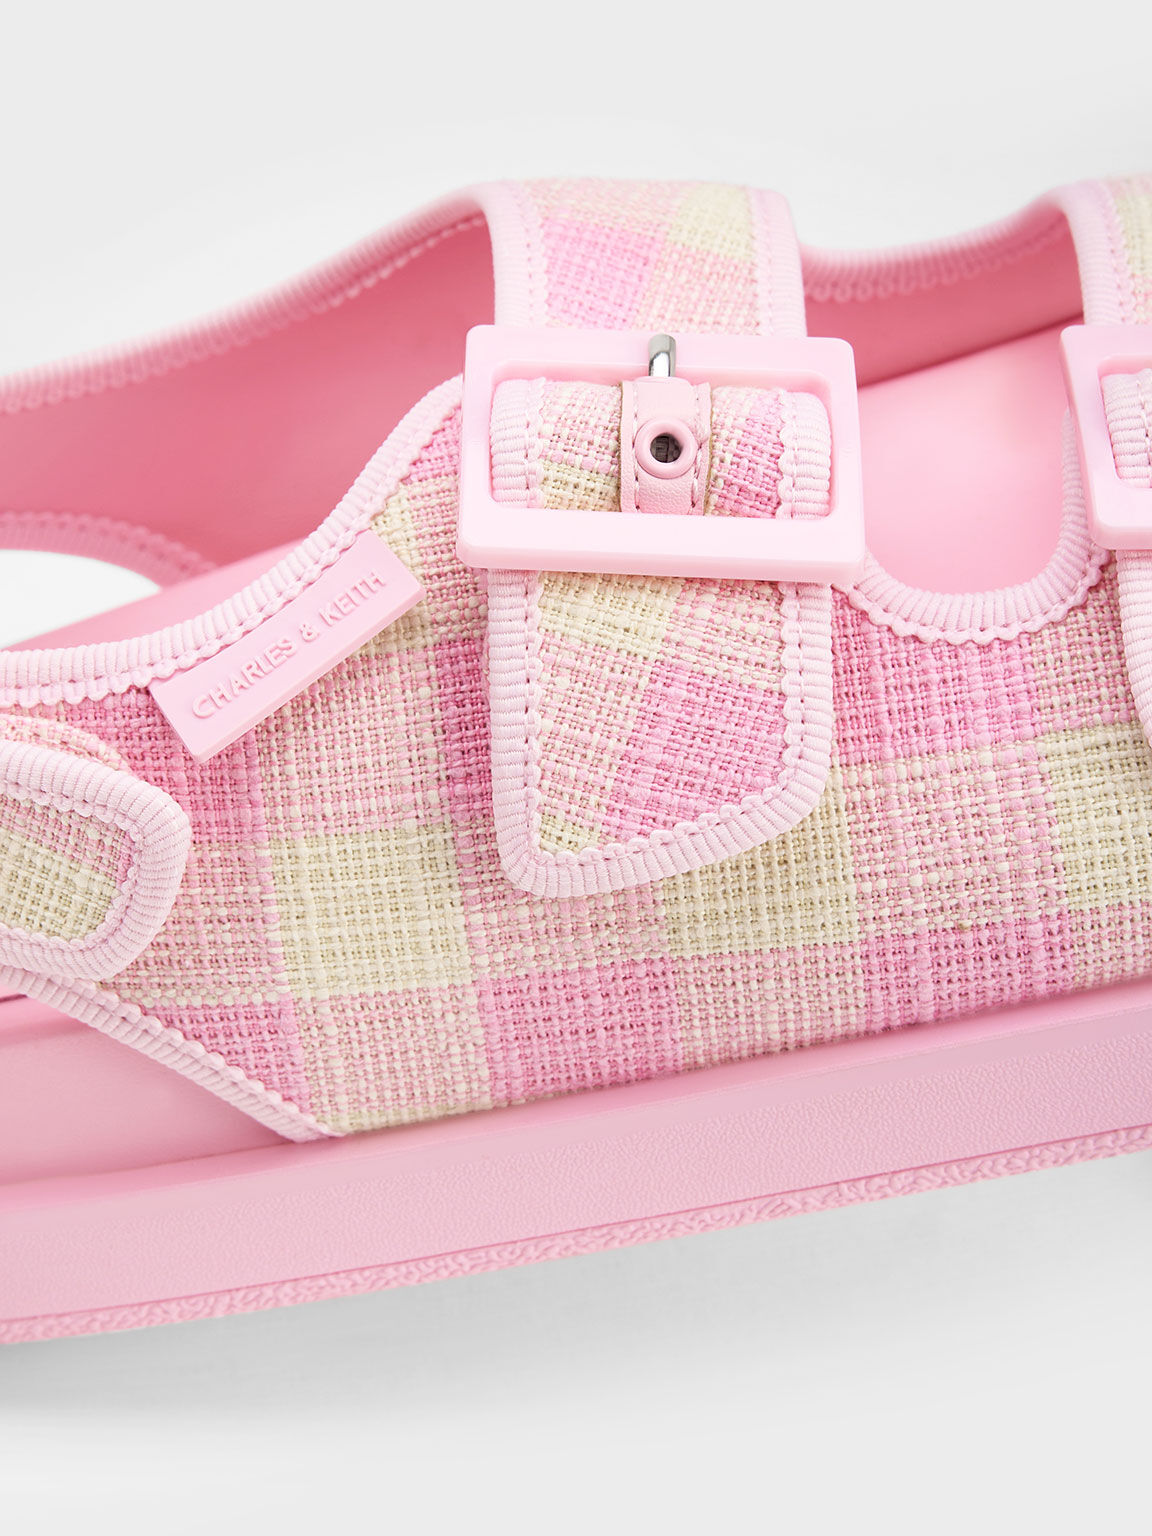 Gingham Buckled Flatform Sandals, Light Pink, hi-res